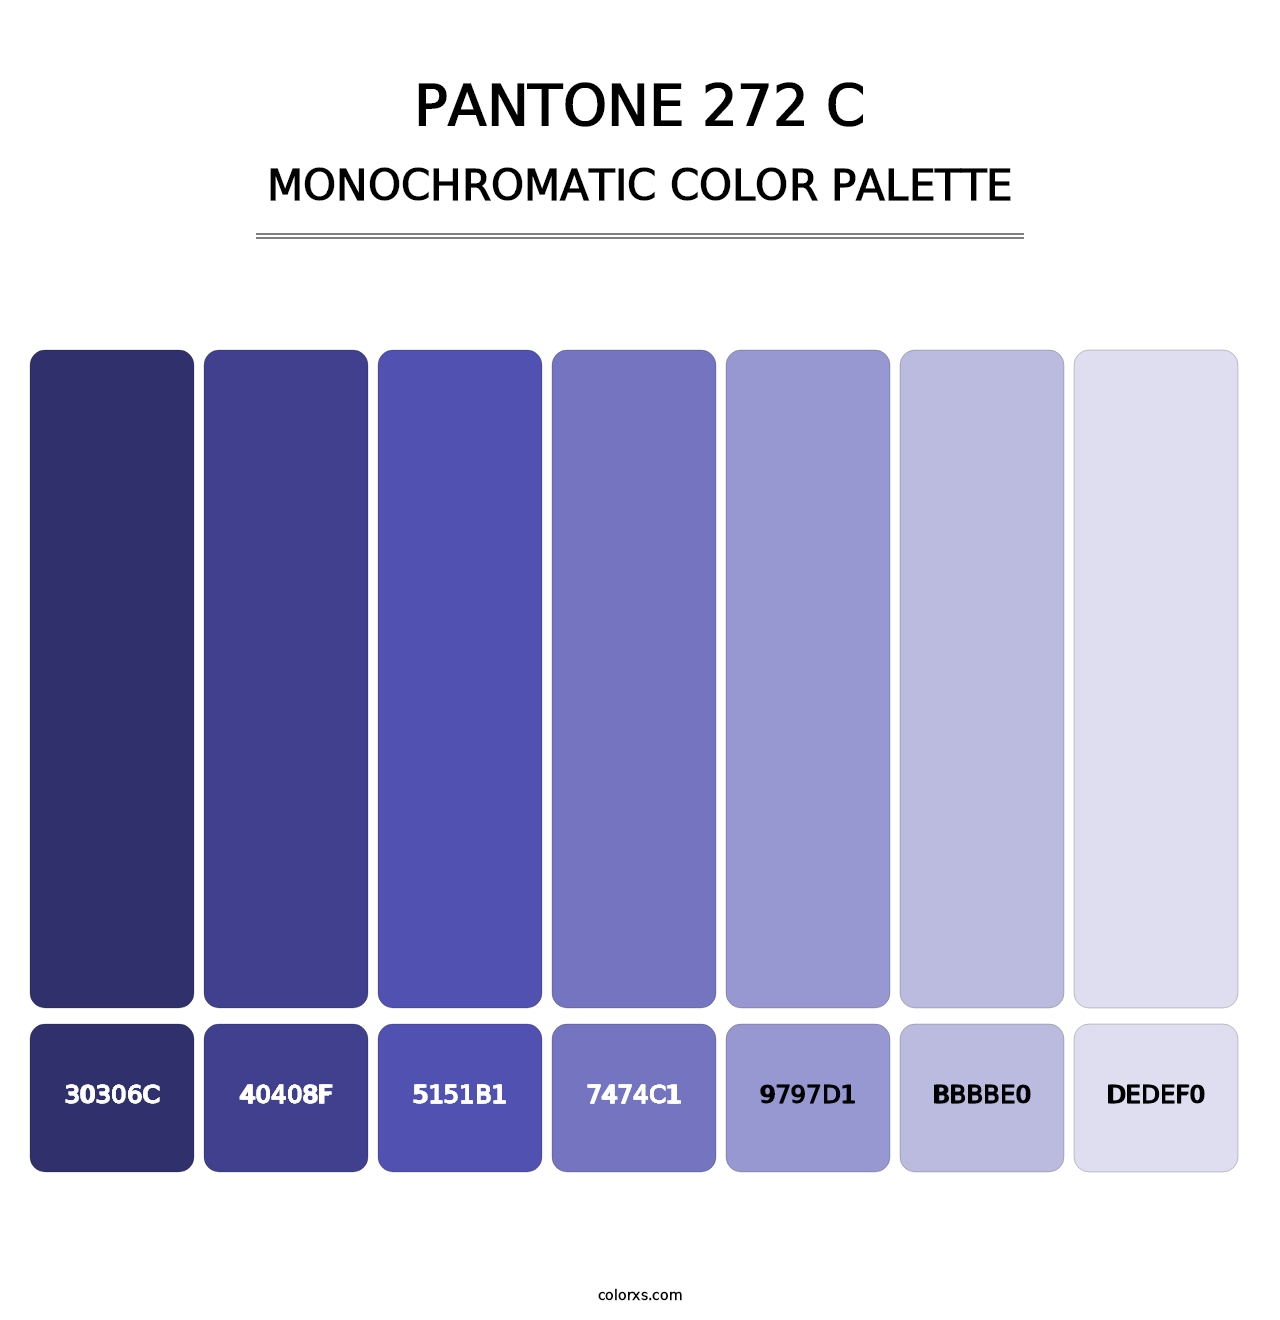 PANTONE 272 C - Monochromatic Color Palette